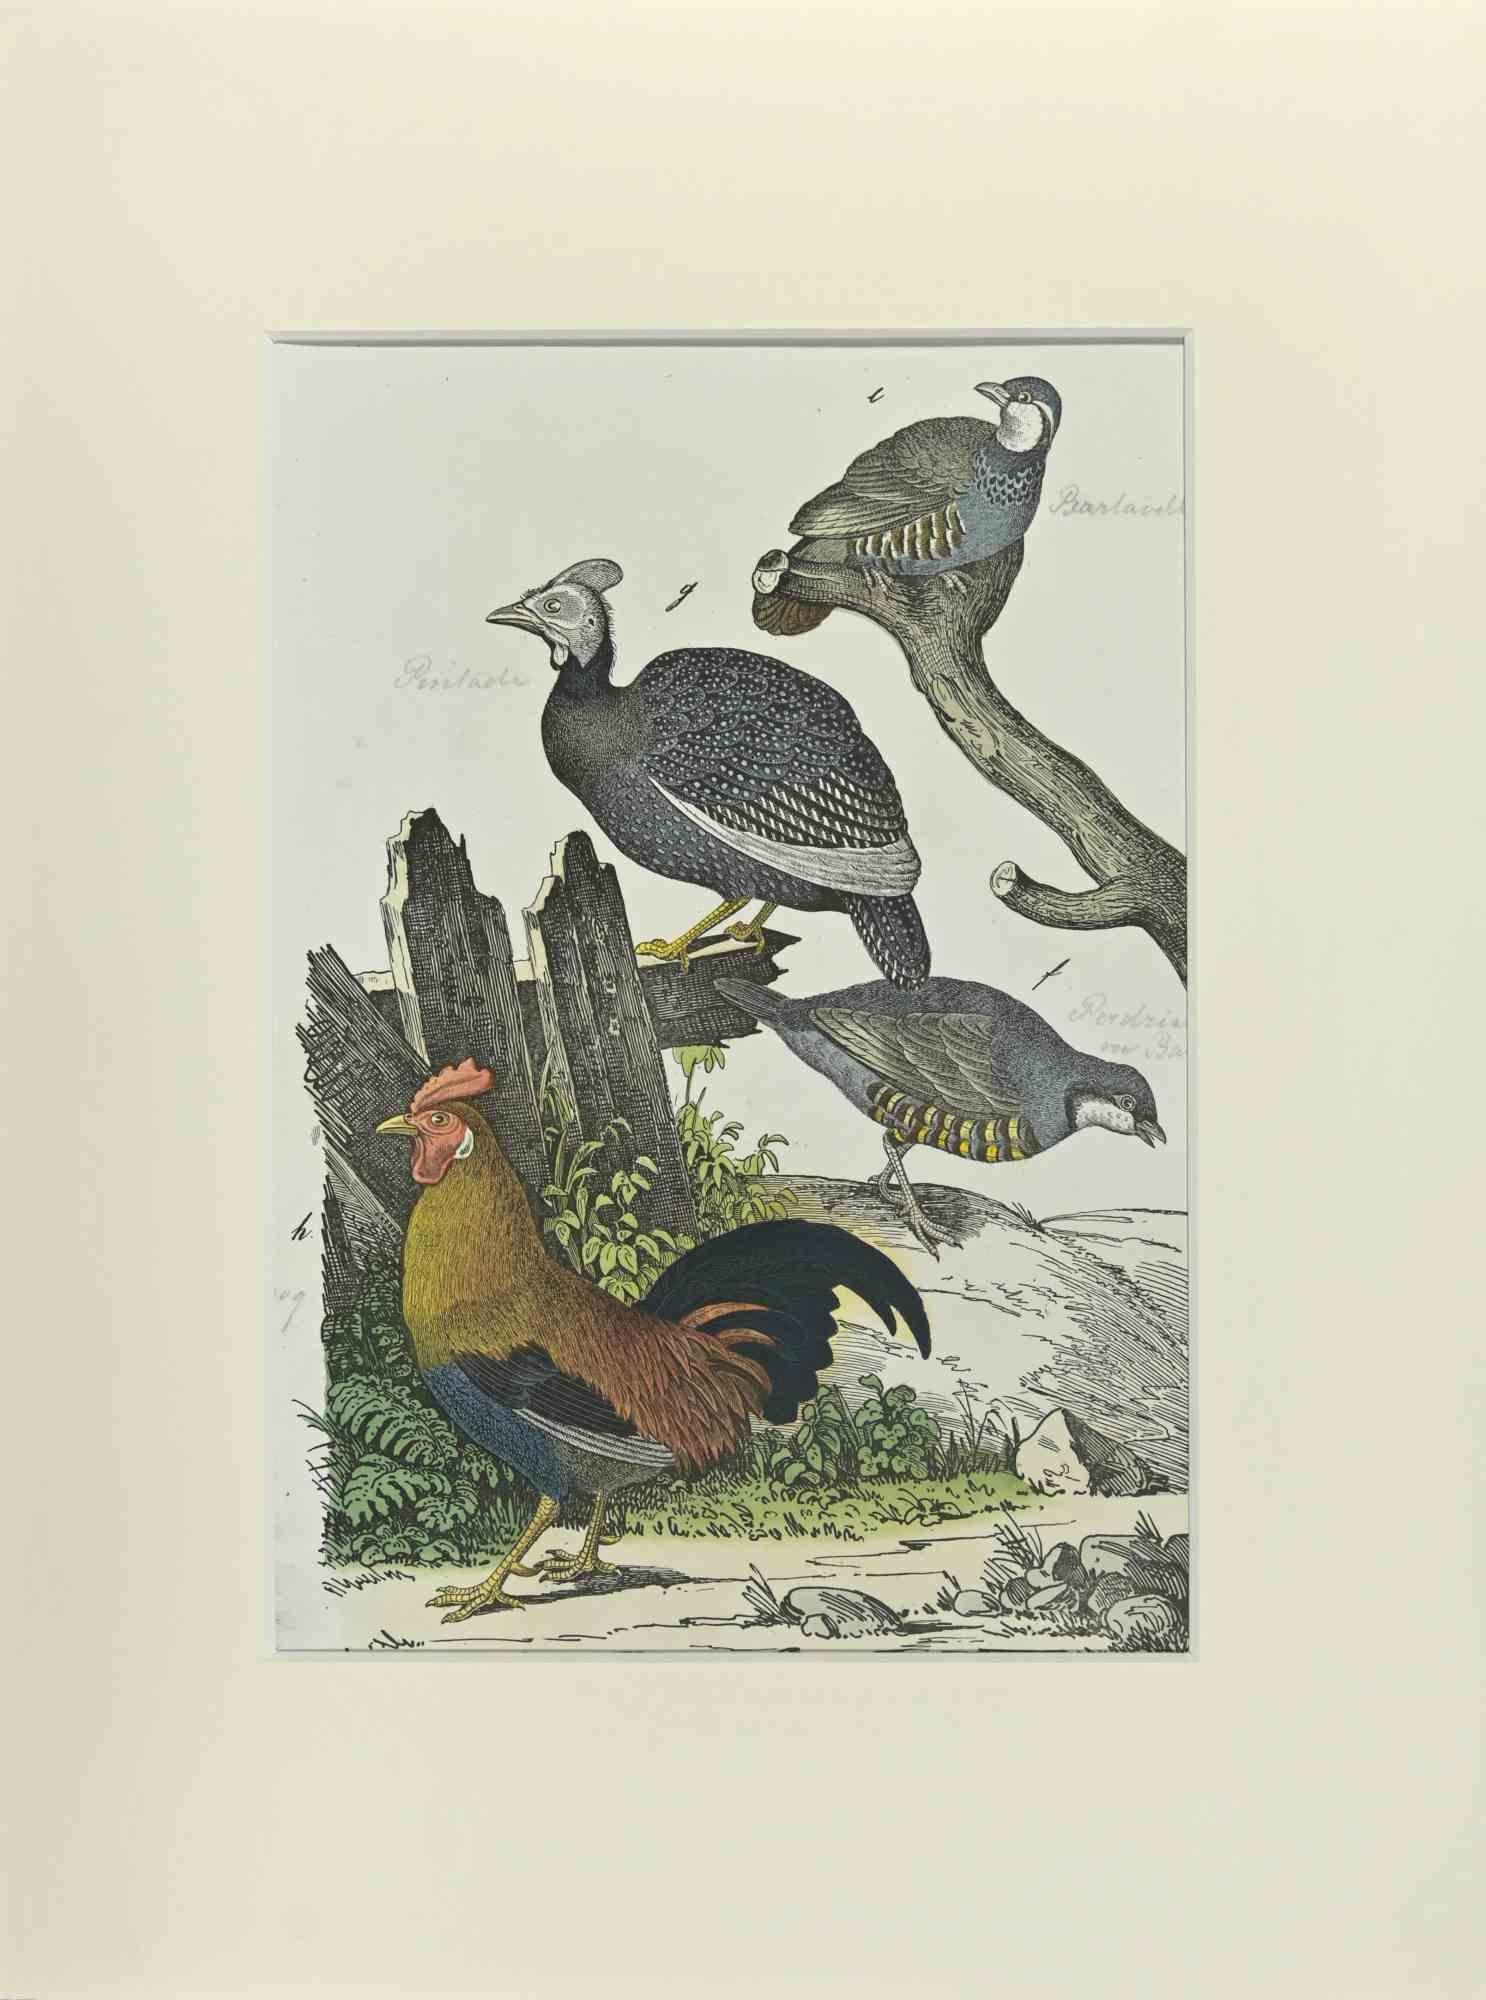 The Rooster - Etching by Johann Friedrich Naumann - 1840